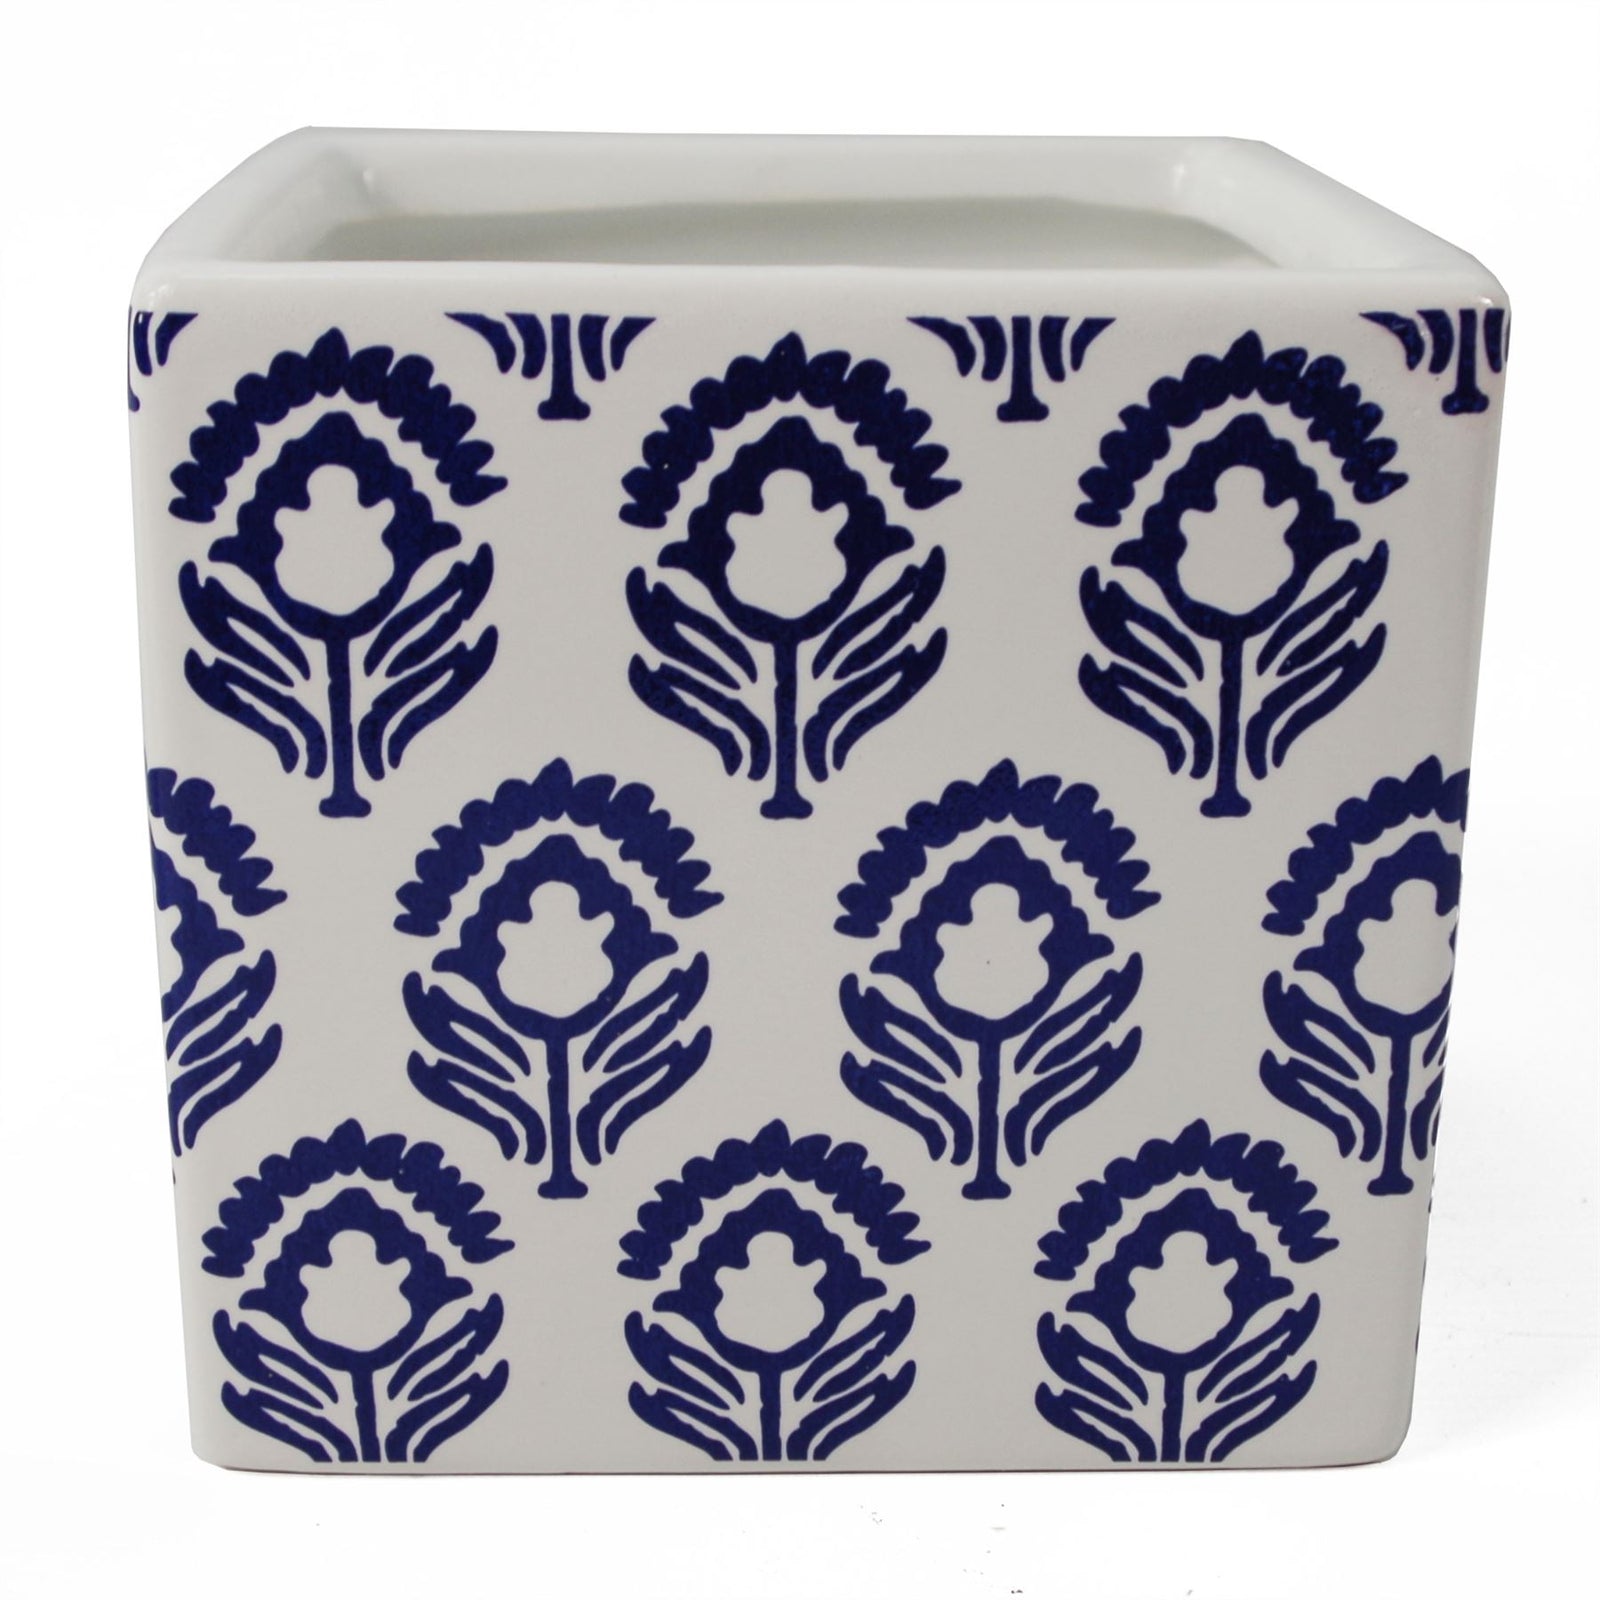 Leaf 12cm Ceramic Cube Planter With Decorative Print Blue Tulip